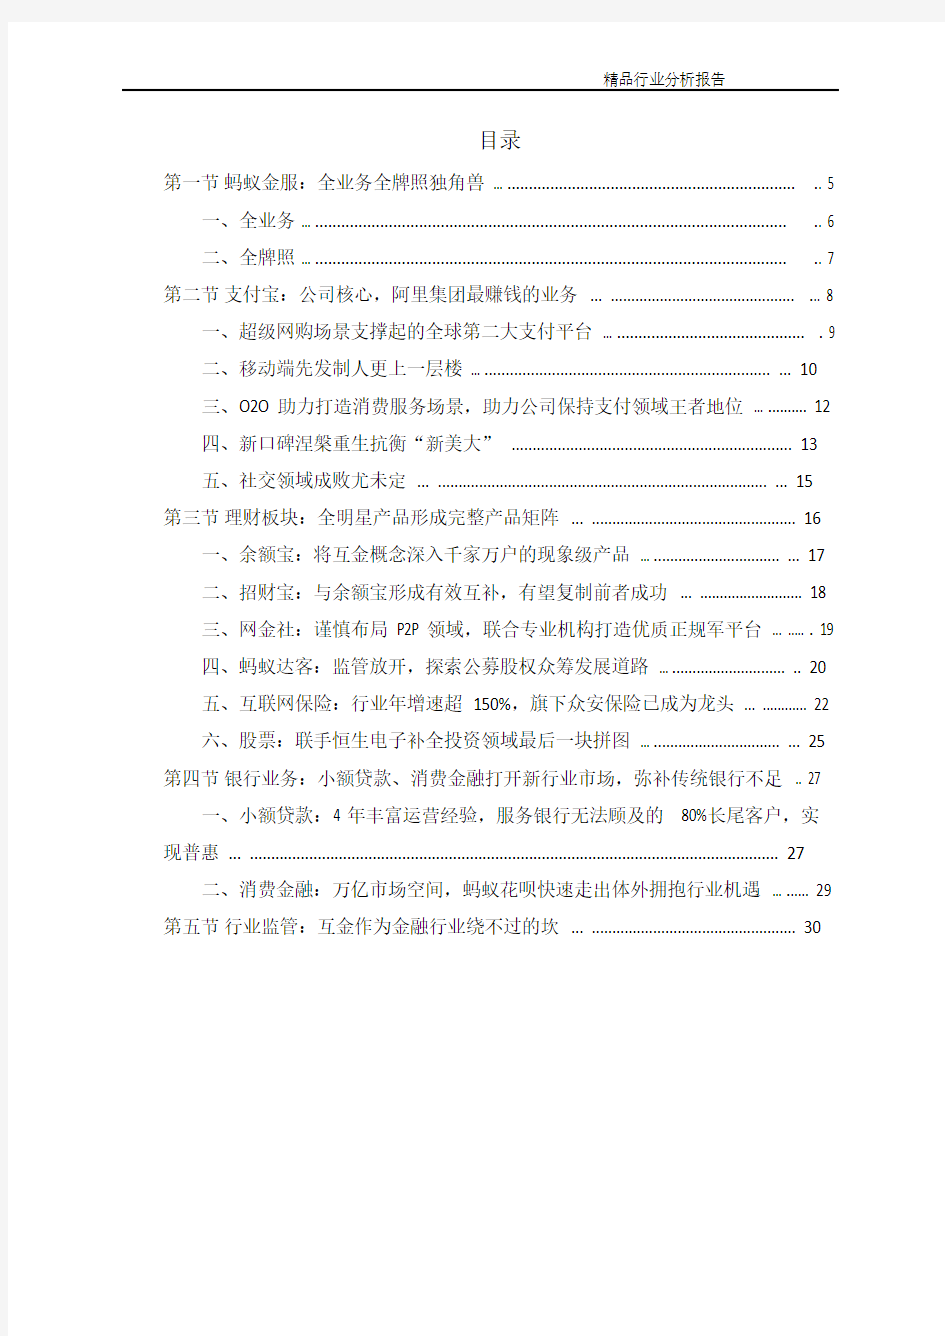 2016年中国互联网金融行业市场调研分析报告(可编辑word版)